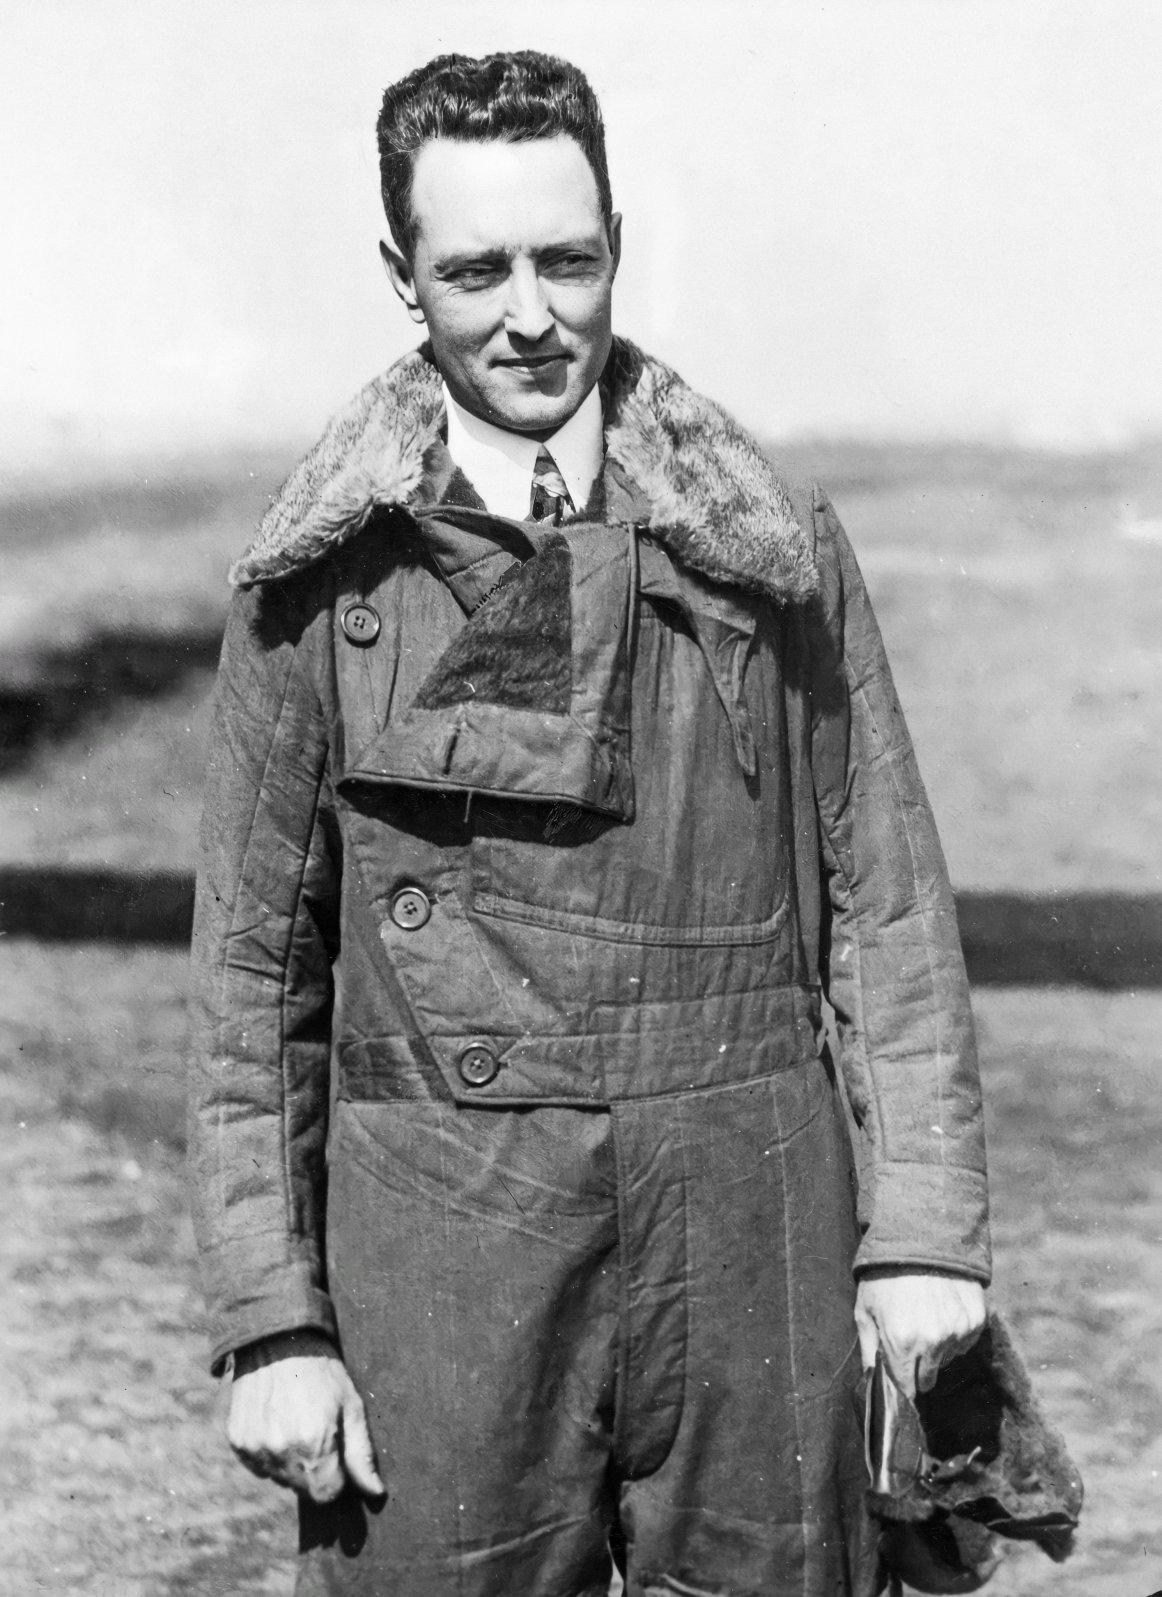 Richard Evelyn Byrd Jr. con chaqueta de aviador, años 1920